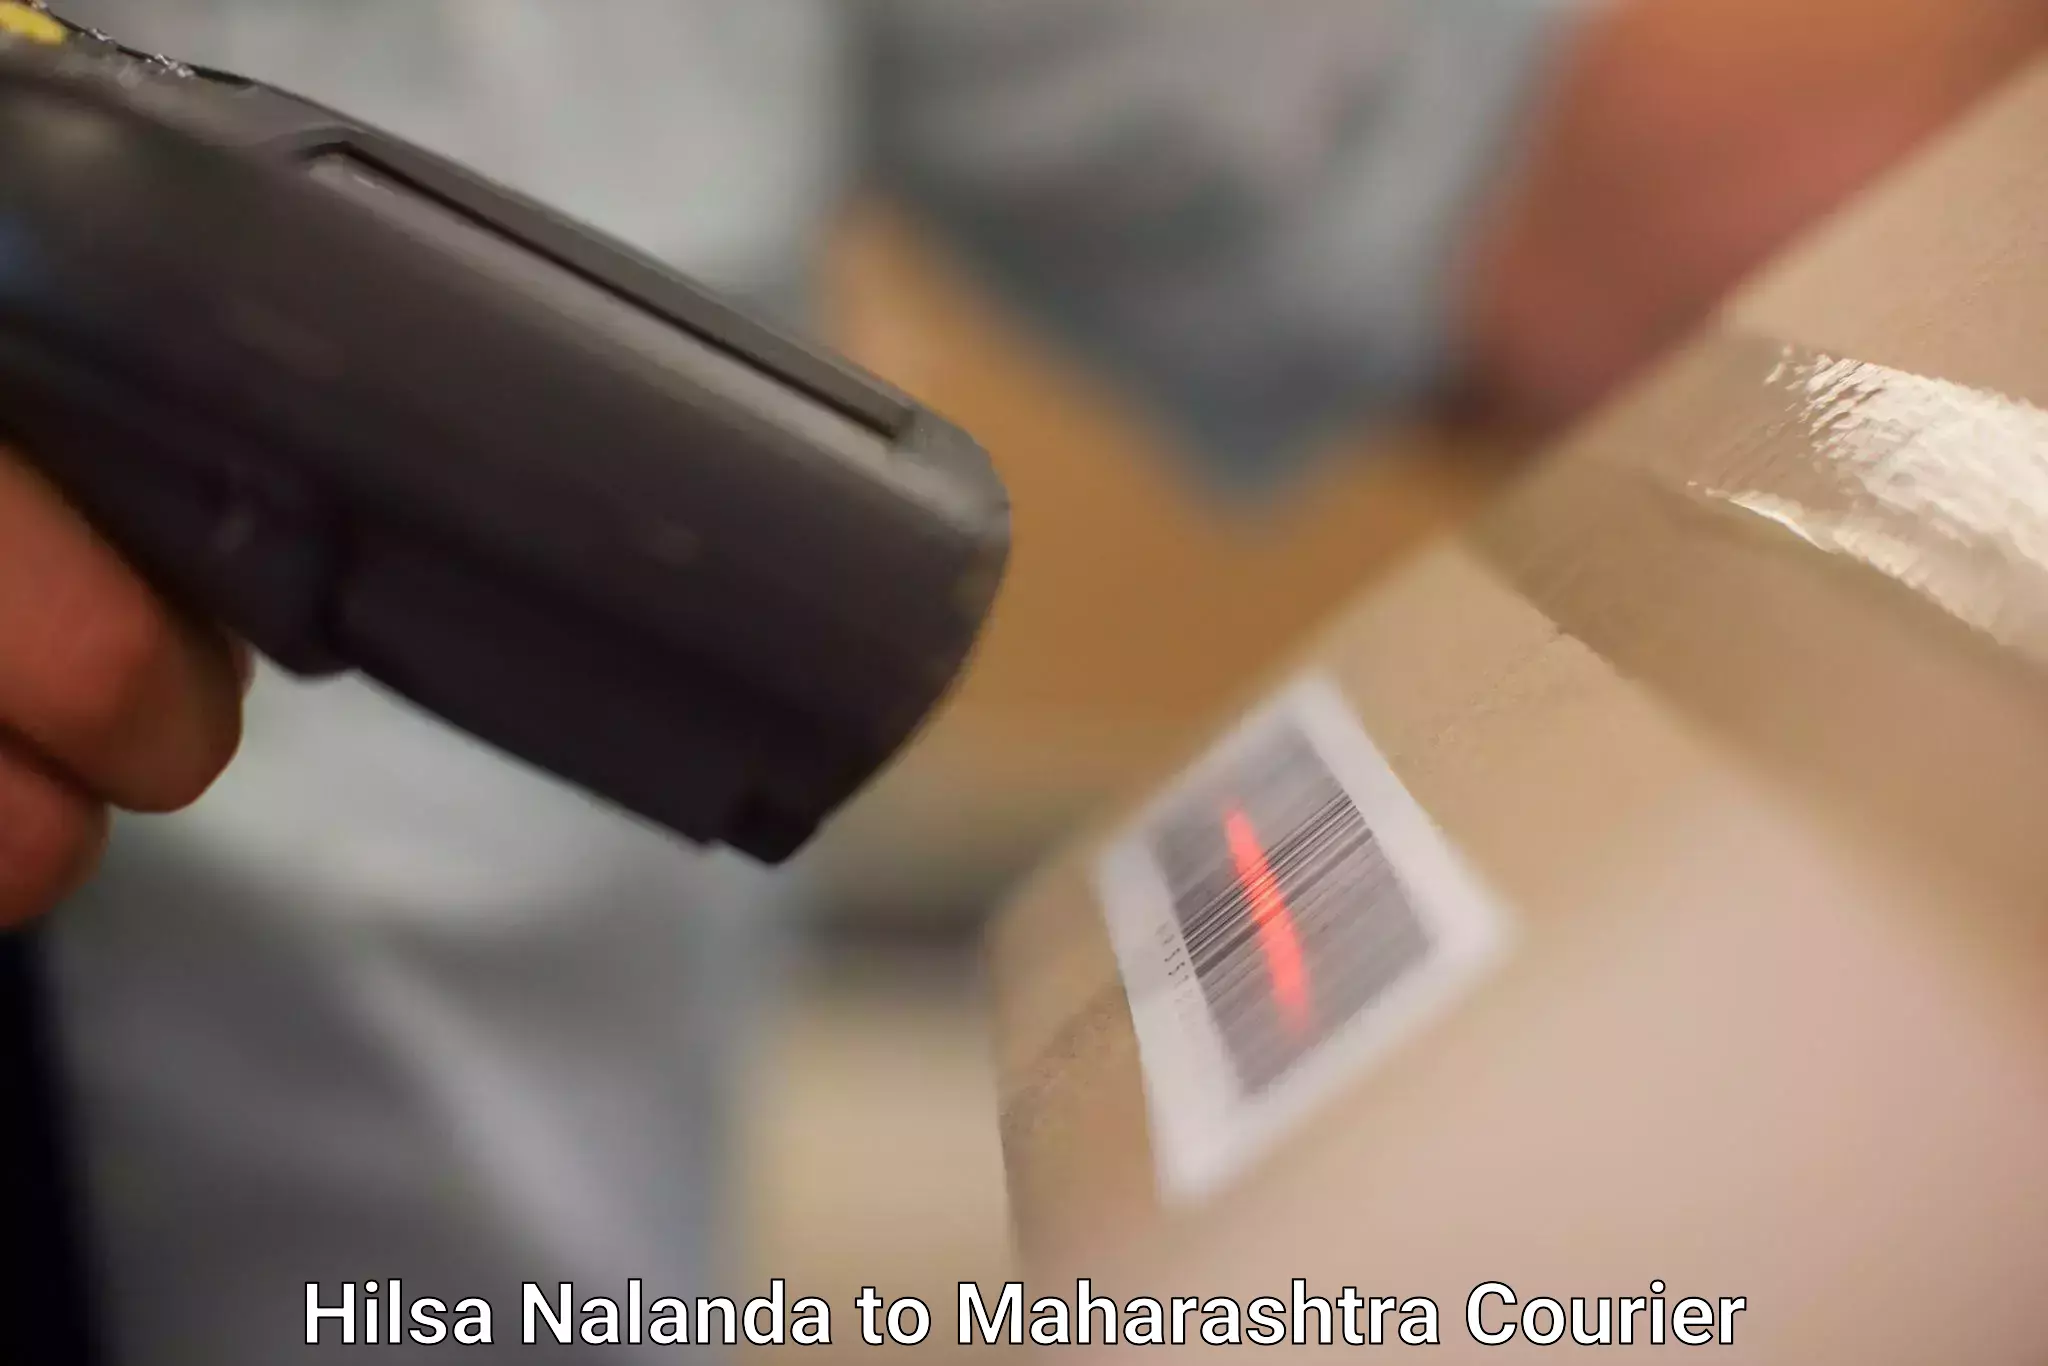 24-hour courier service Hilsa Nalanda to Akot